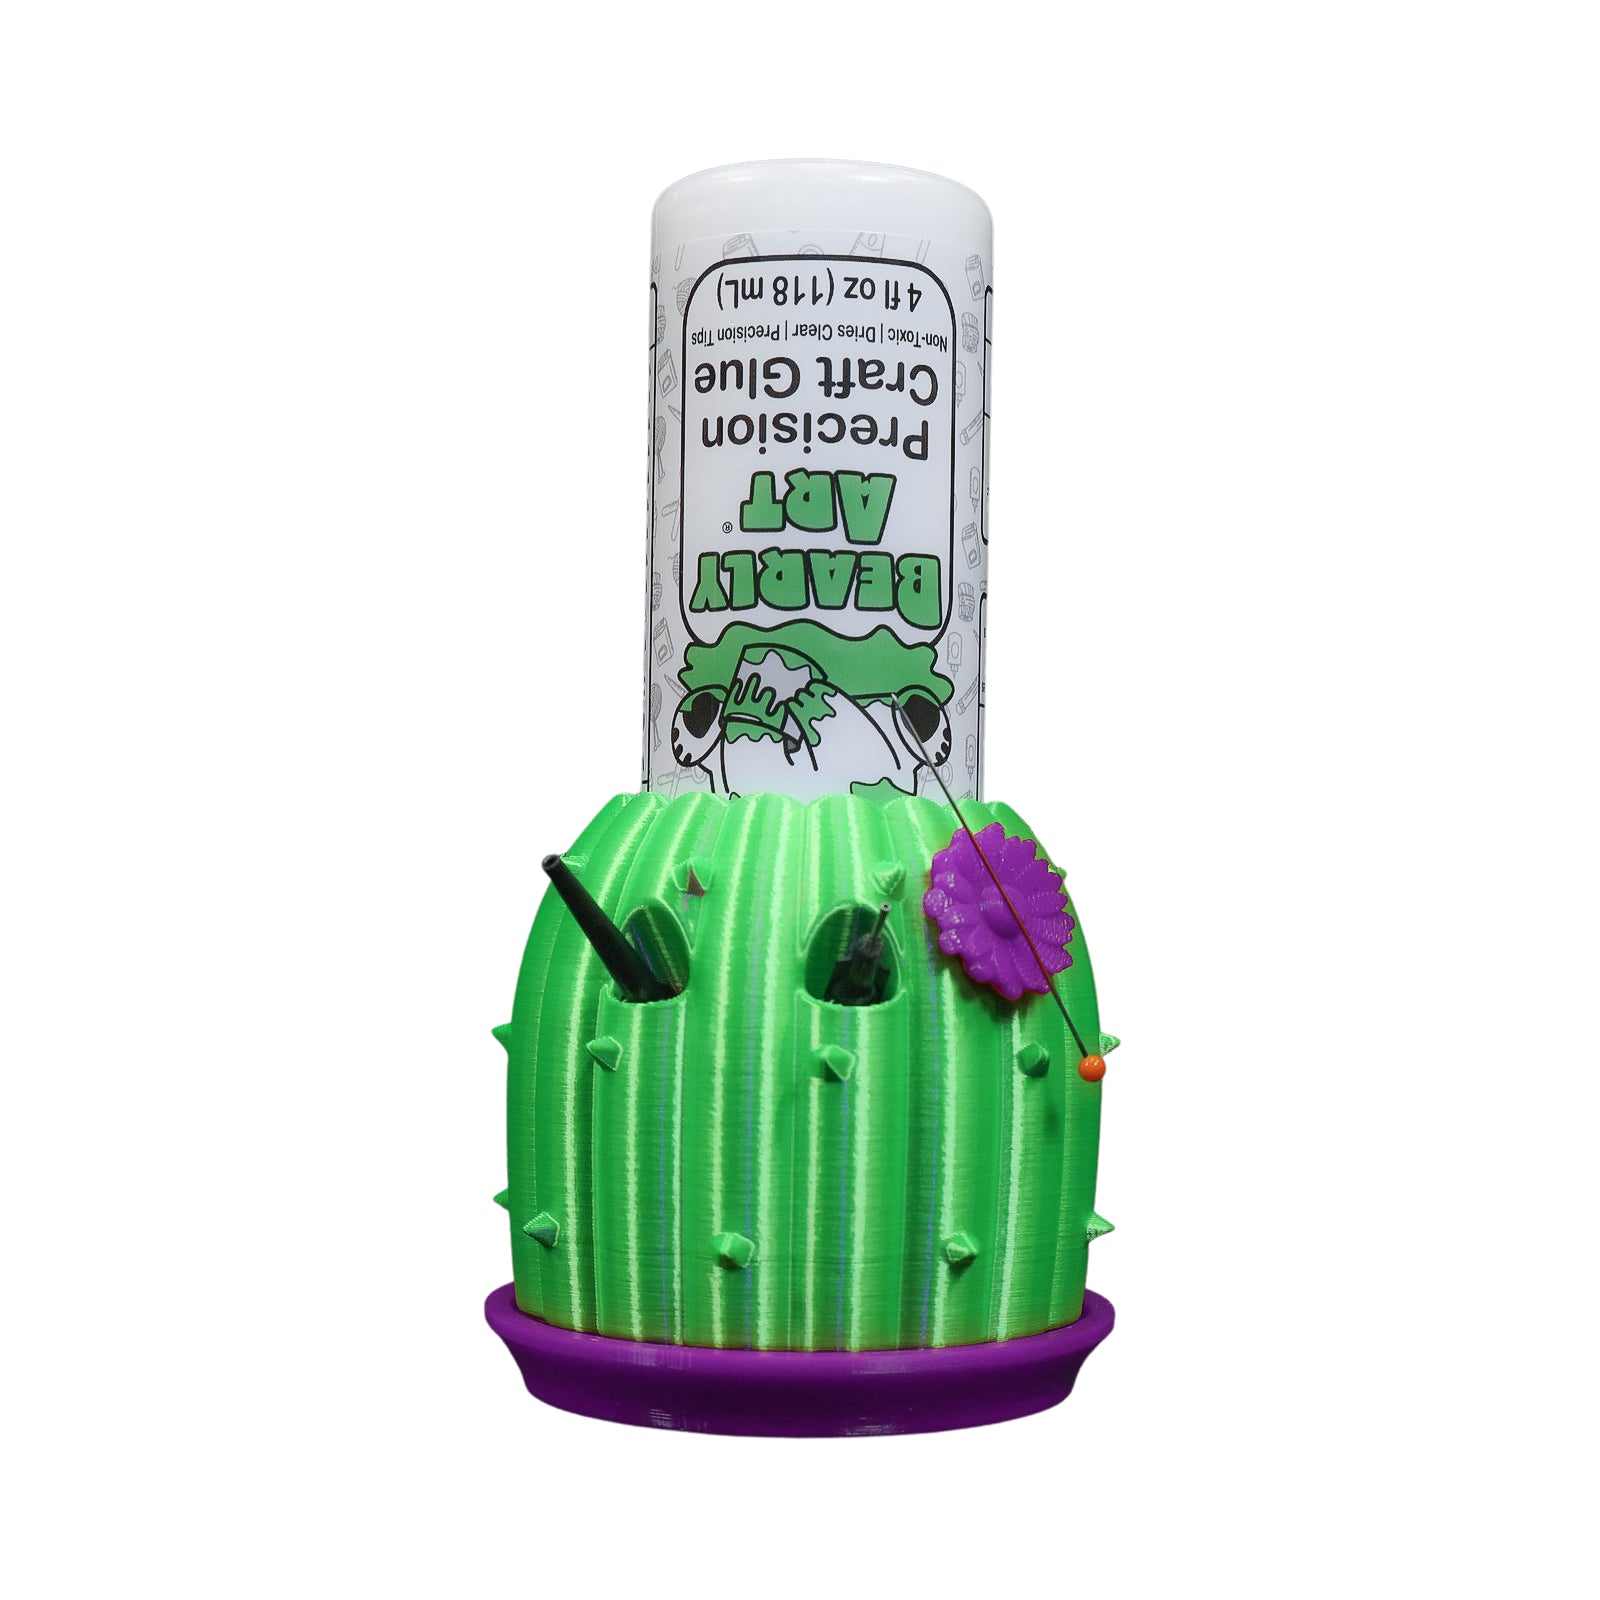 Whimsical Wishes US - Cactus Glue Holder